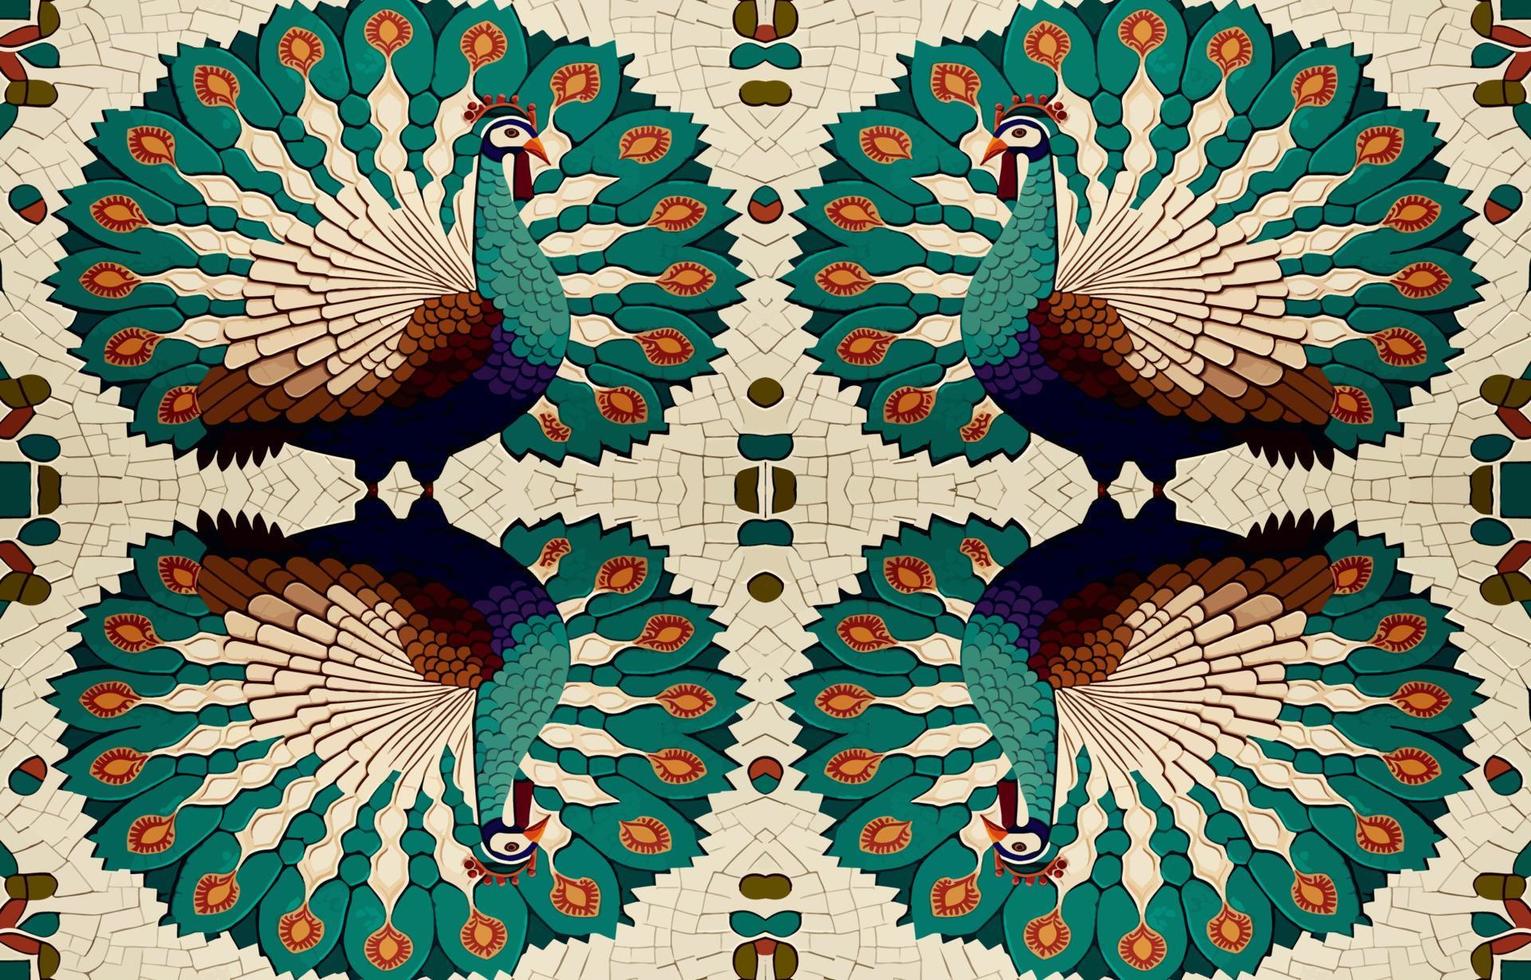 Pauw fazant kalkoen mozaïek- patroon. abstract volk etnisch tribal meetkundig grafisch lijn. structuur textiel kleding stof naadloos patronen vector illustratie. overladen elegant luxe wijnoogst retro stijl.